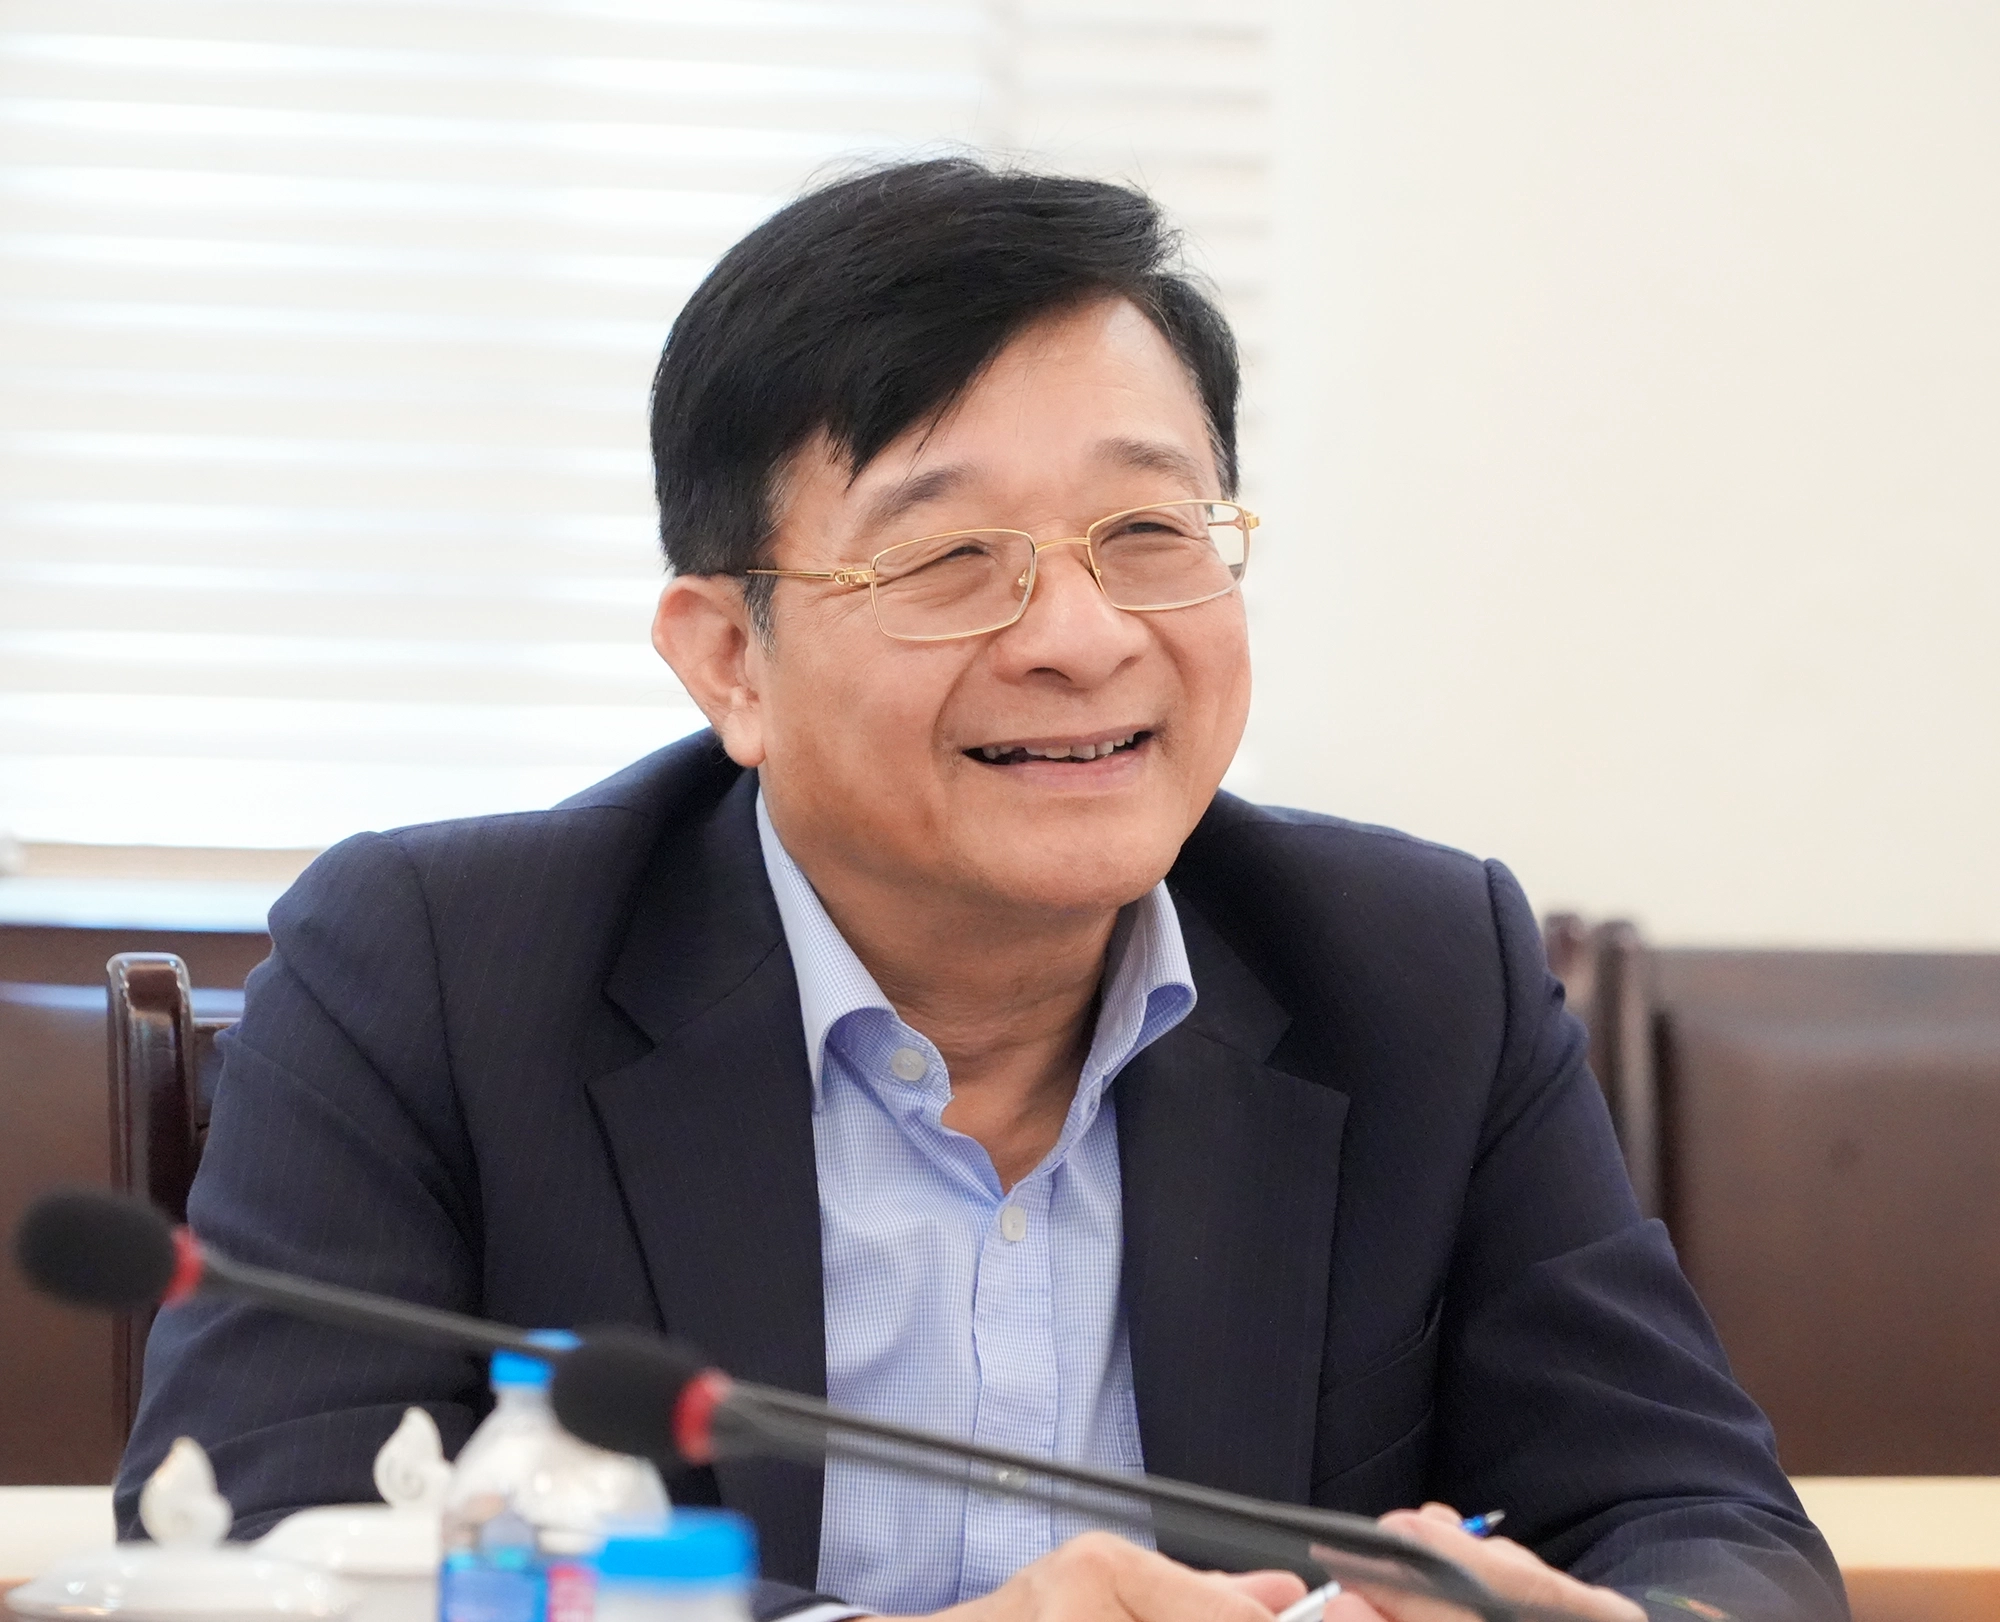 TS. Nguyễn Quốc Hùng, Phó Chủ tịch kiêm Tổng Thư ký Hiệp hội Ngân hàng Việt Nam